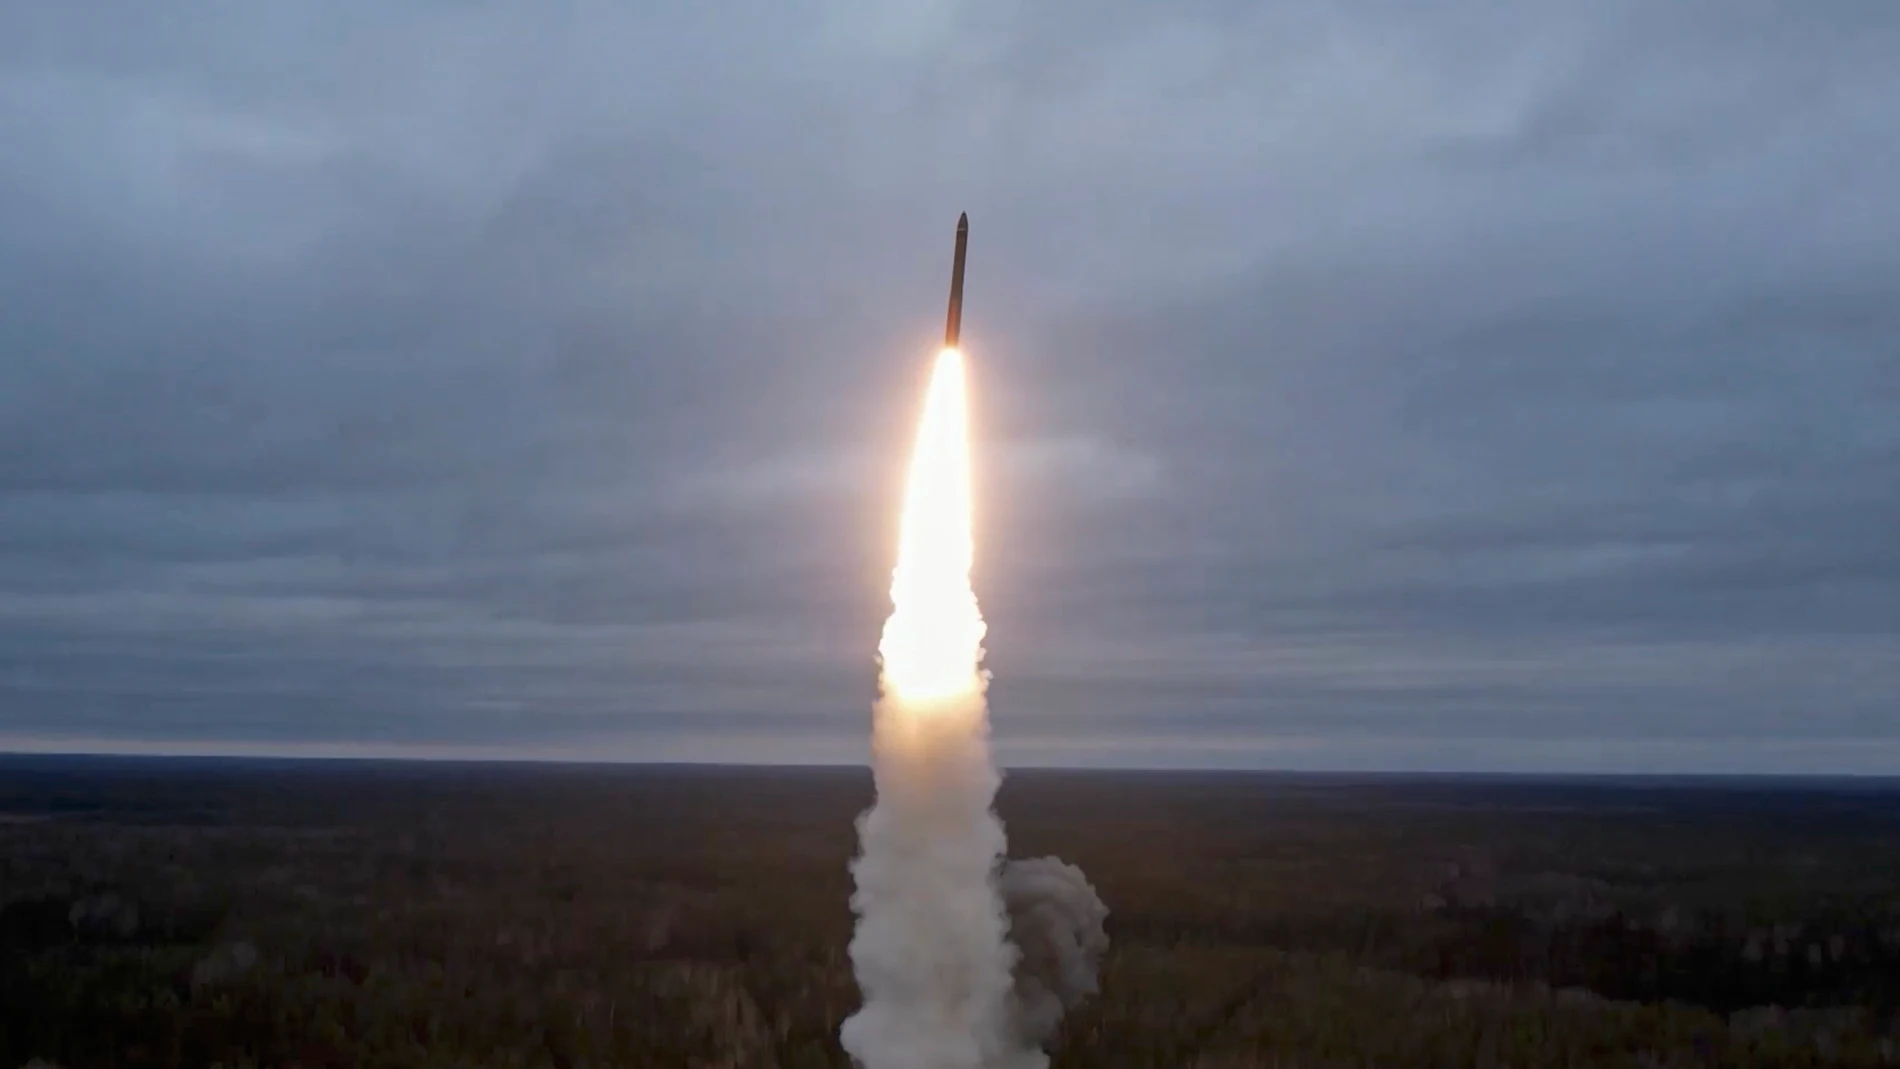 Captura de un lanzamiento de misiles balísticos intercontinentales 'Yars' en el cosmódromo de Plesetsk al campo de pruebas de Kura en Plesetsk, Rusia